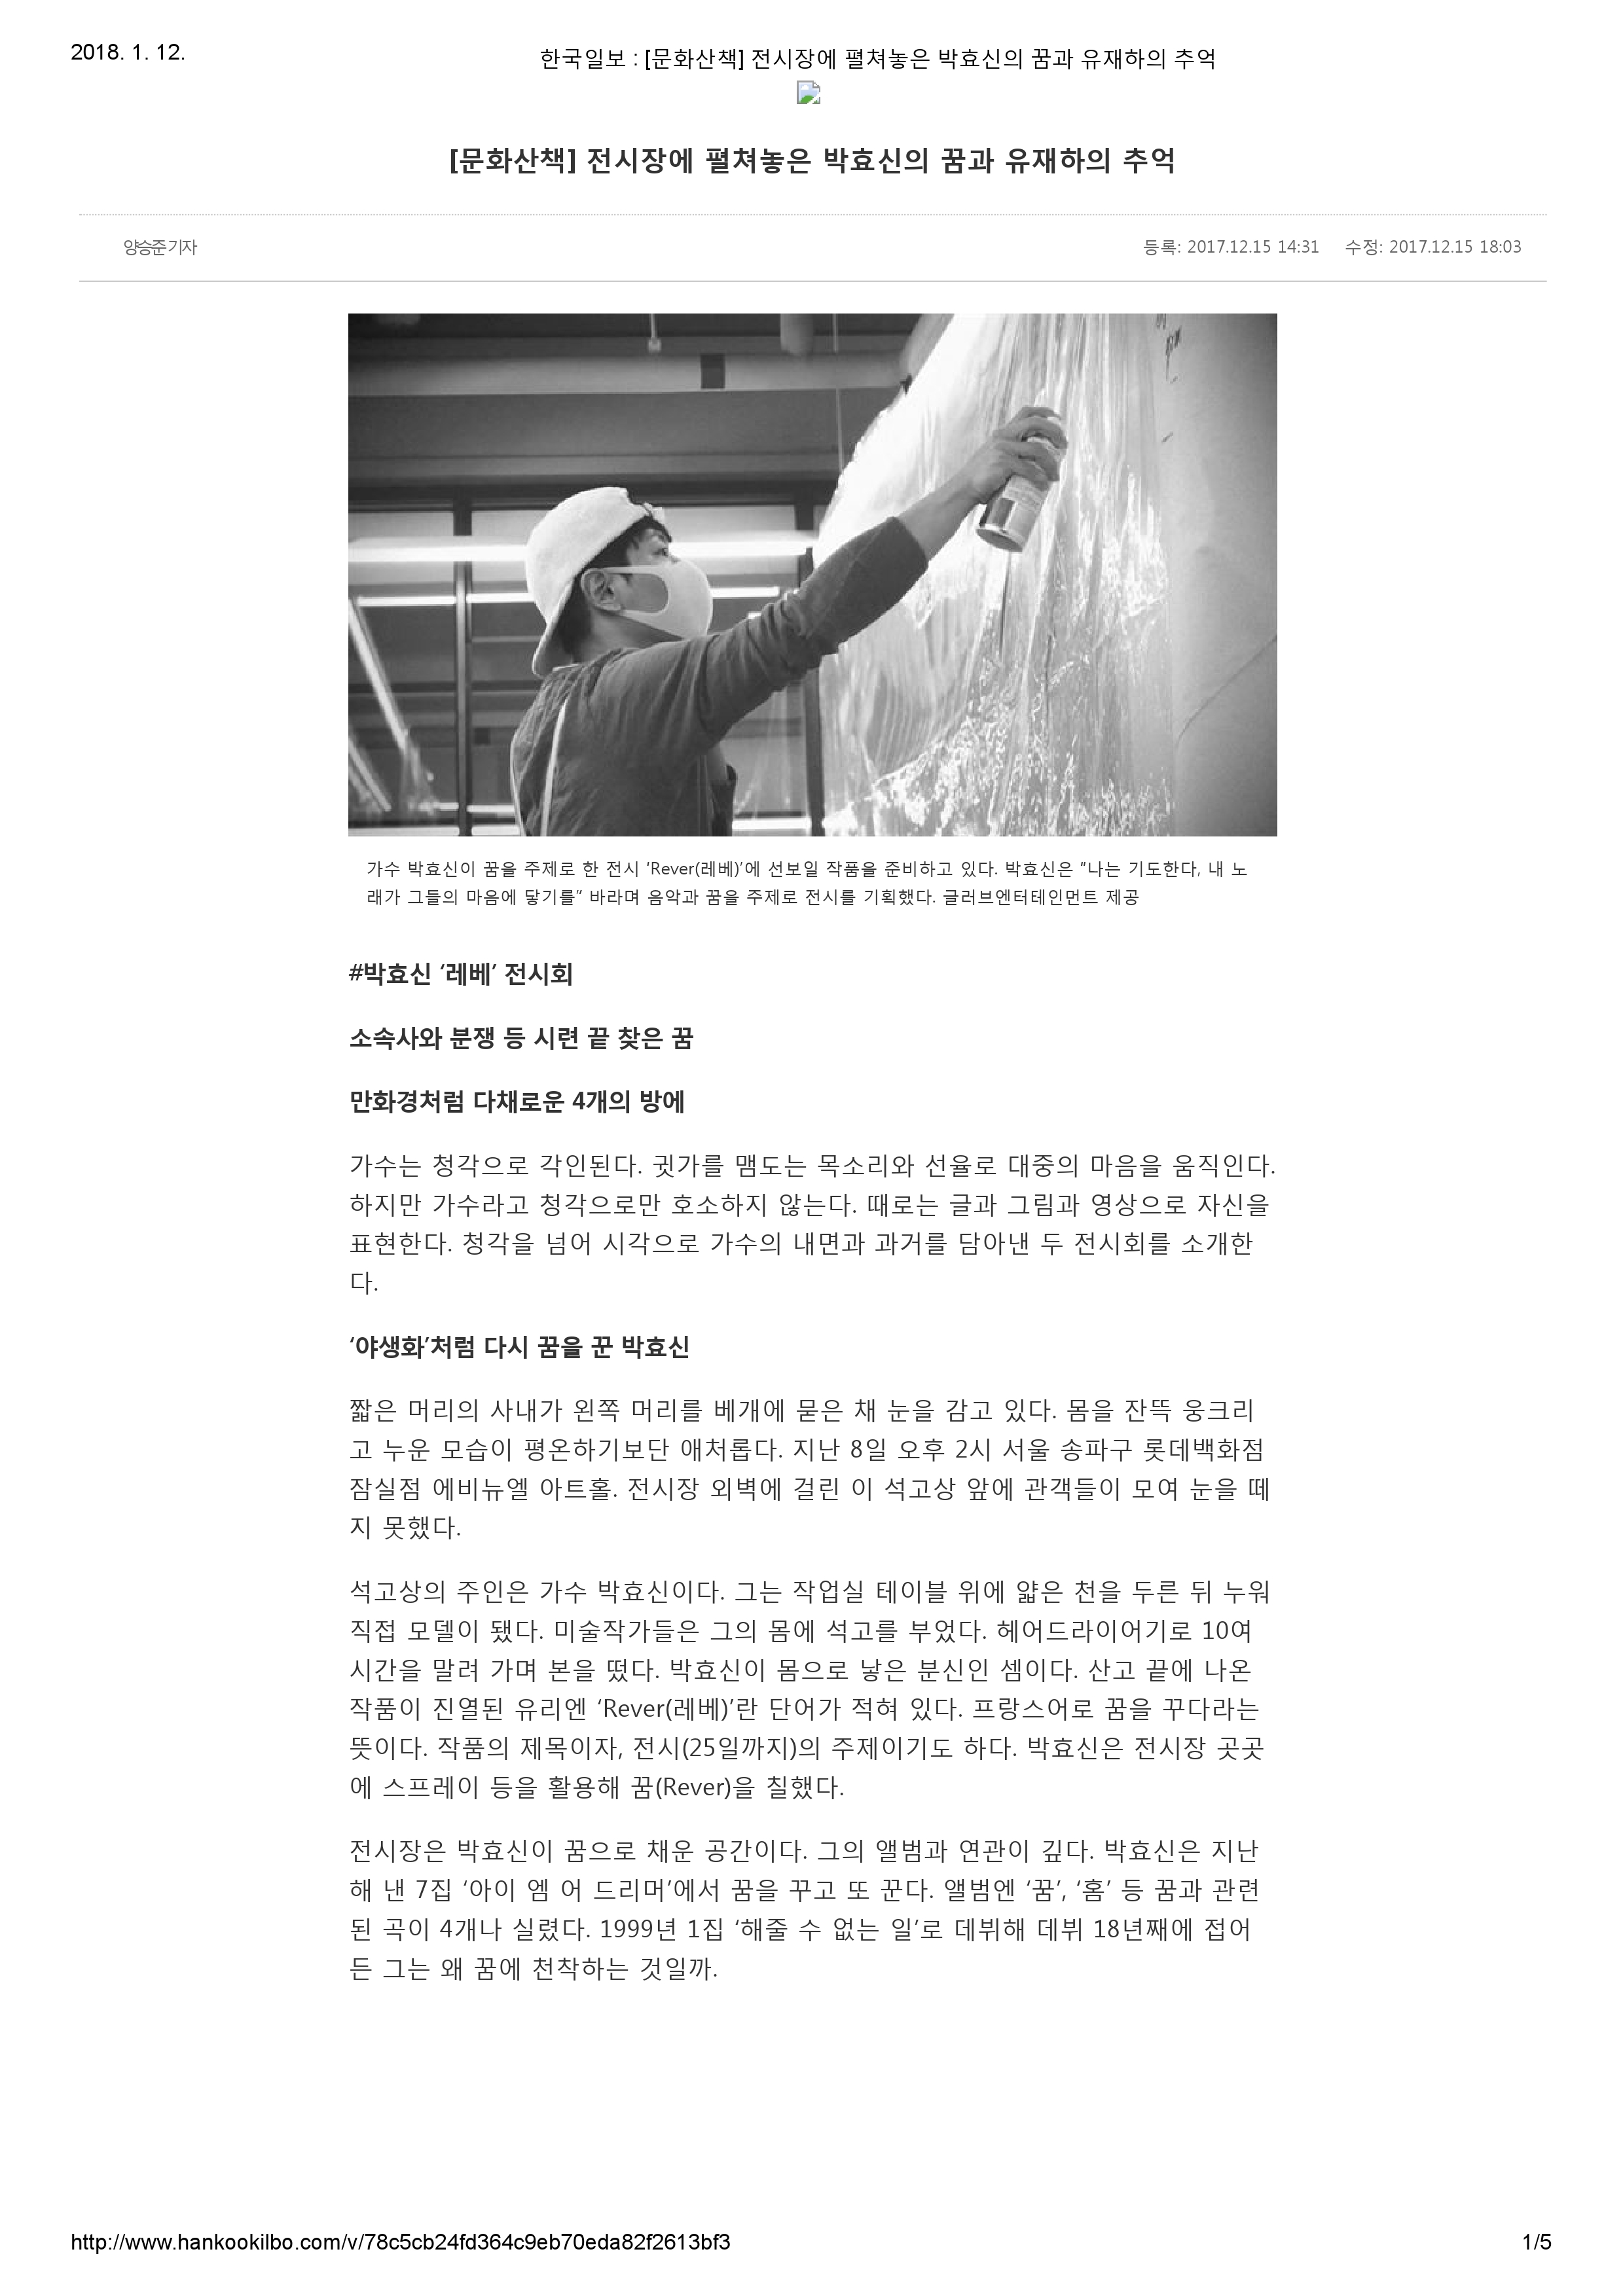 20171215_한국일보_[문화산책] 전시장에 펼쳐놓은 박효신의 꿈과 유재하의 추억-1.jpg